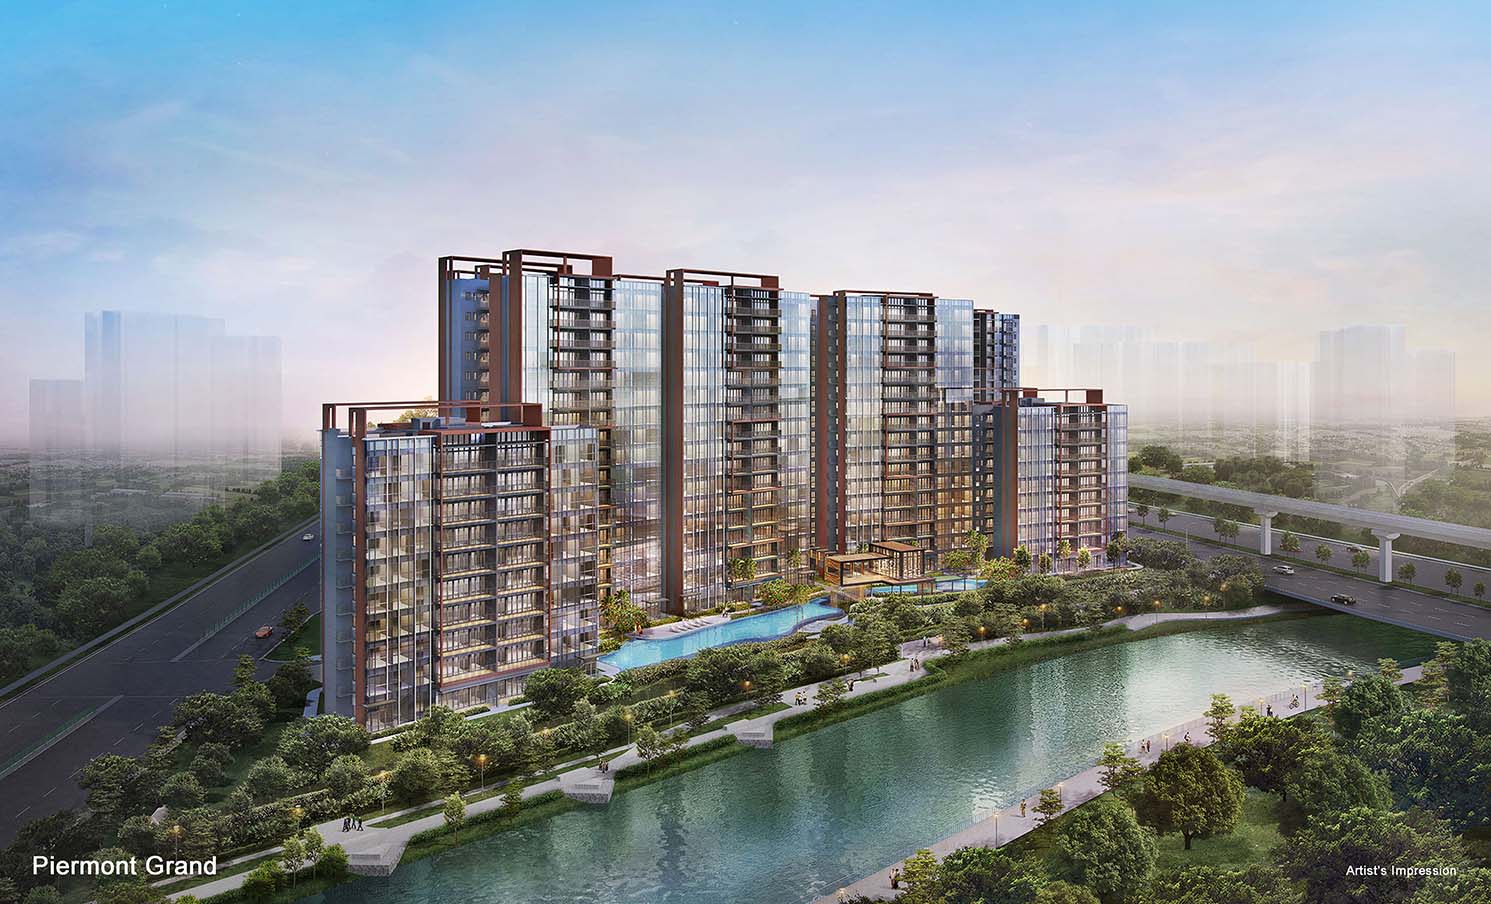 Executive Condominium Singapore